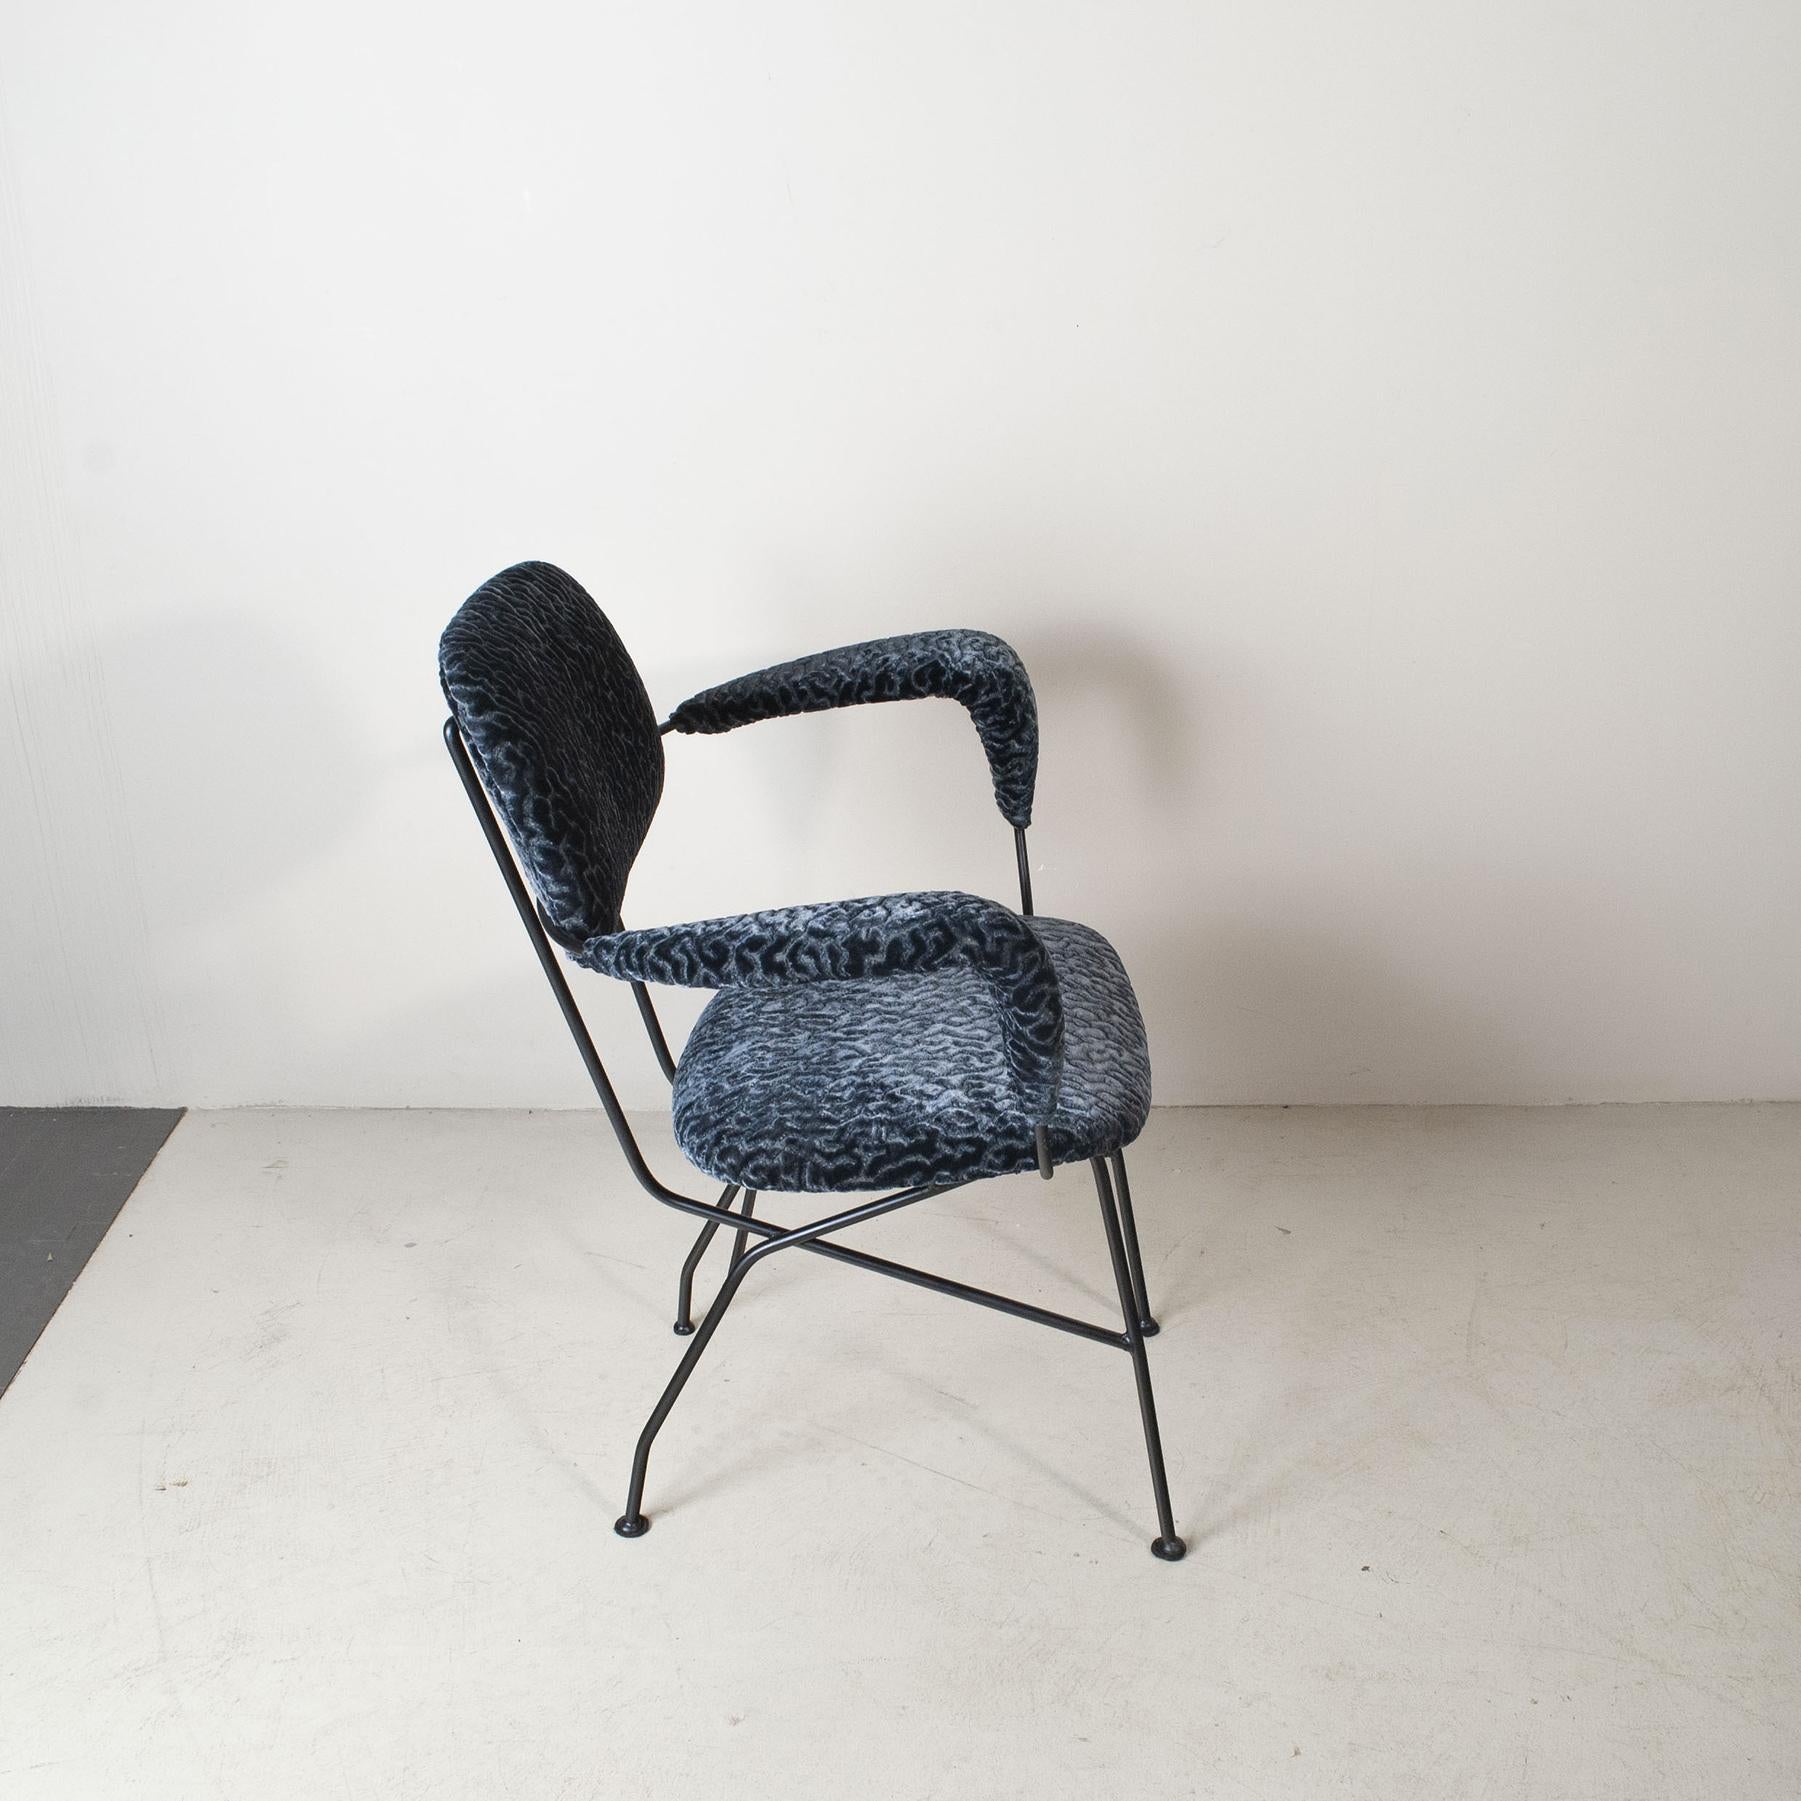 Italian Gastone Rinaldi chair for Rima 1960’s For Sale